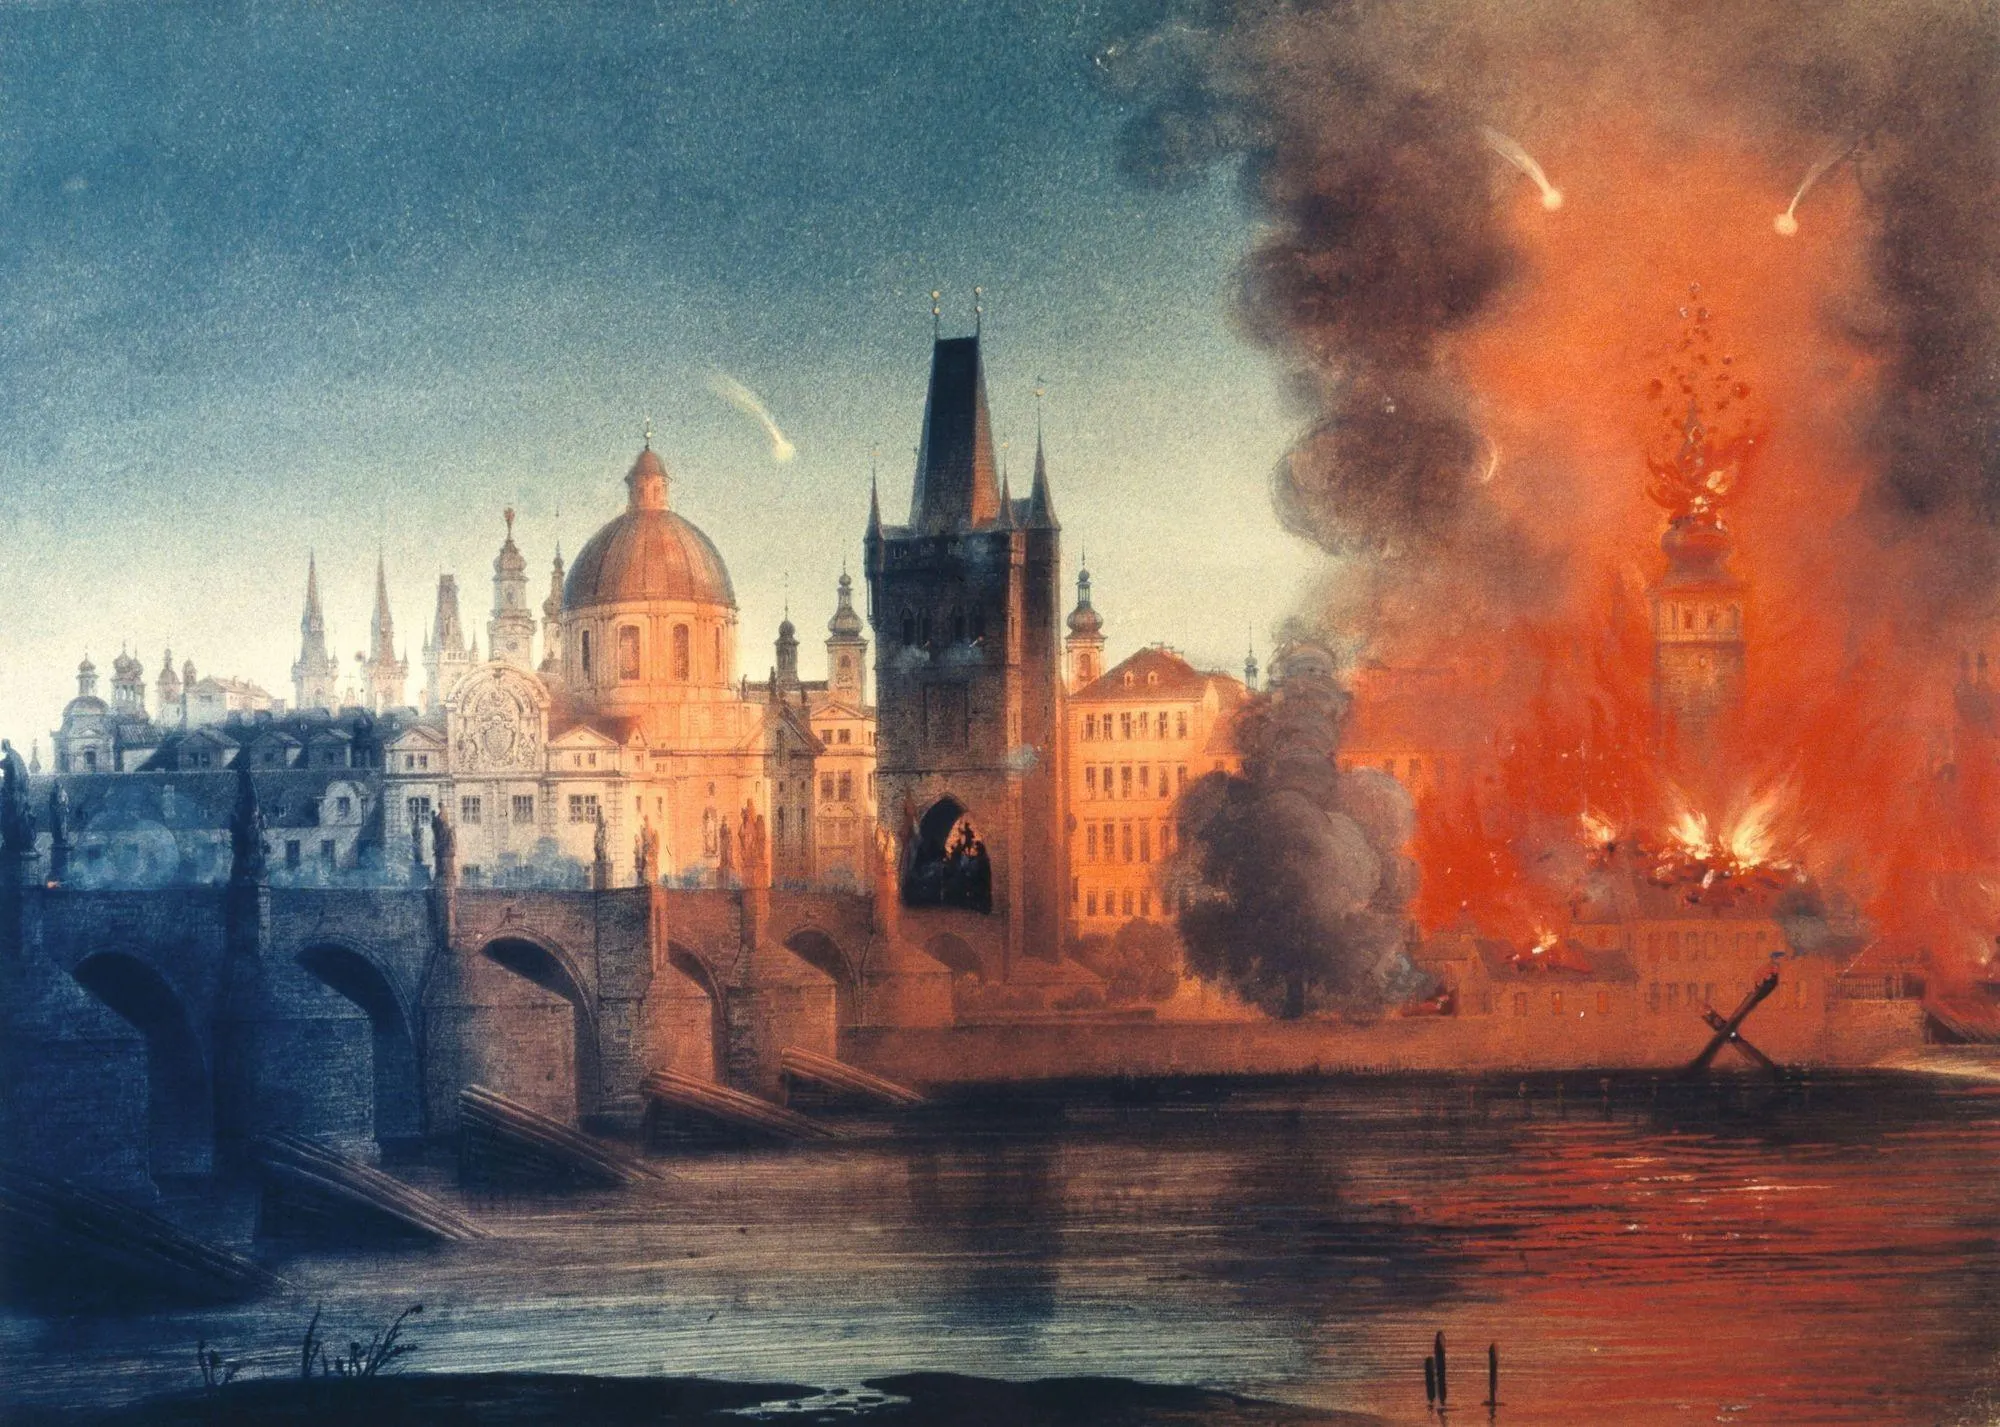 Bombardement de Prague, 1848, lithographie, 33,6 x 45,8 cm, Wien Museum, Vienne.